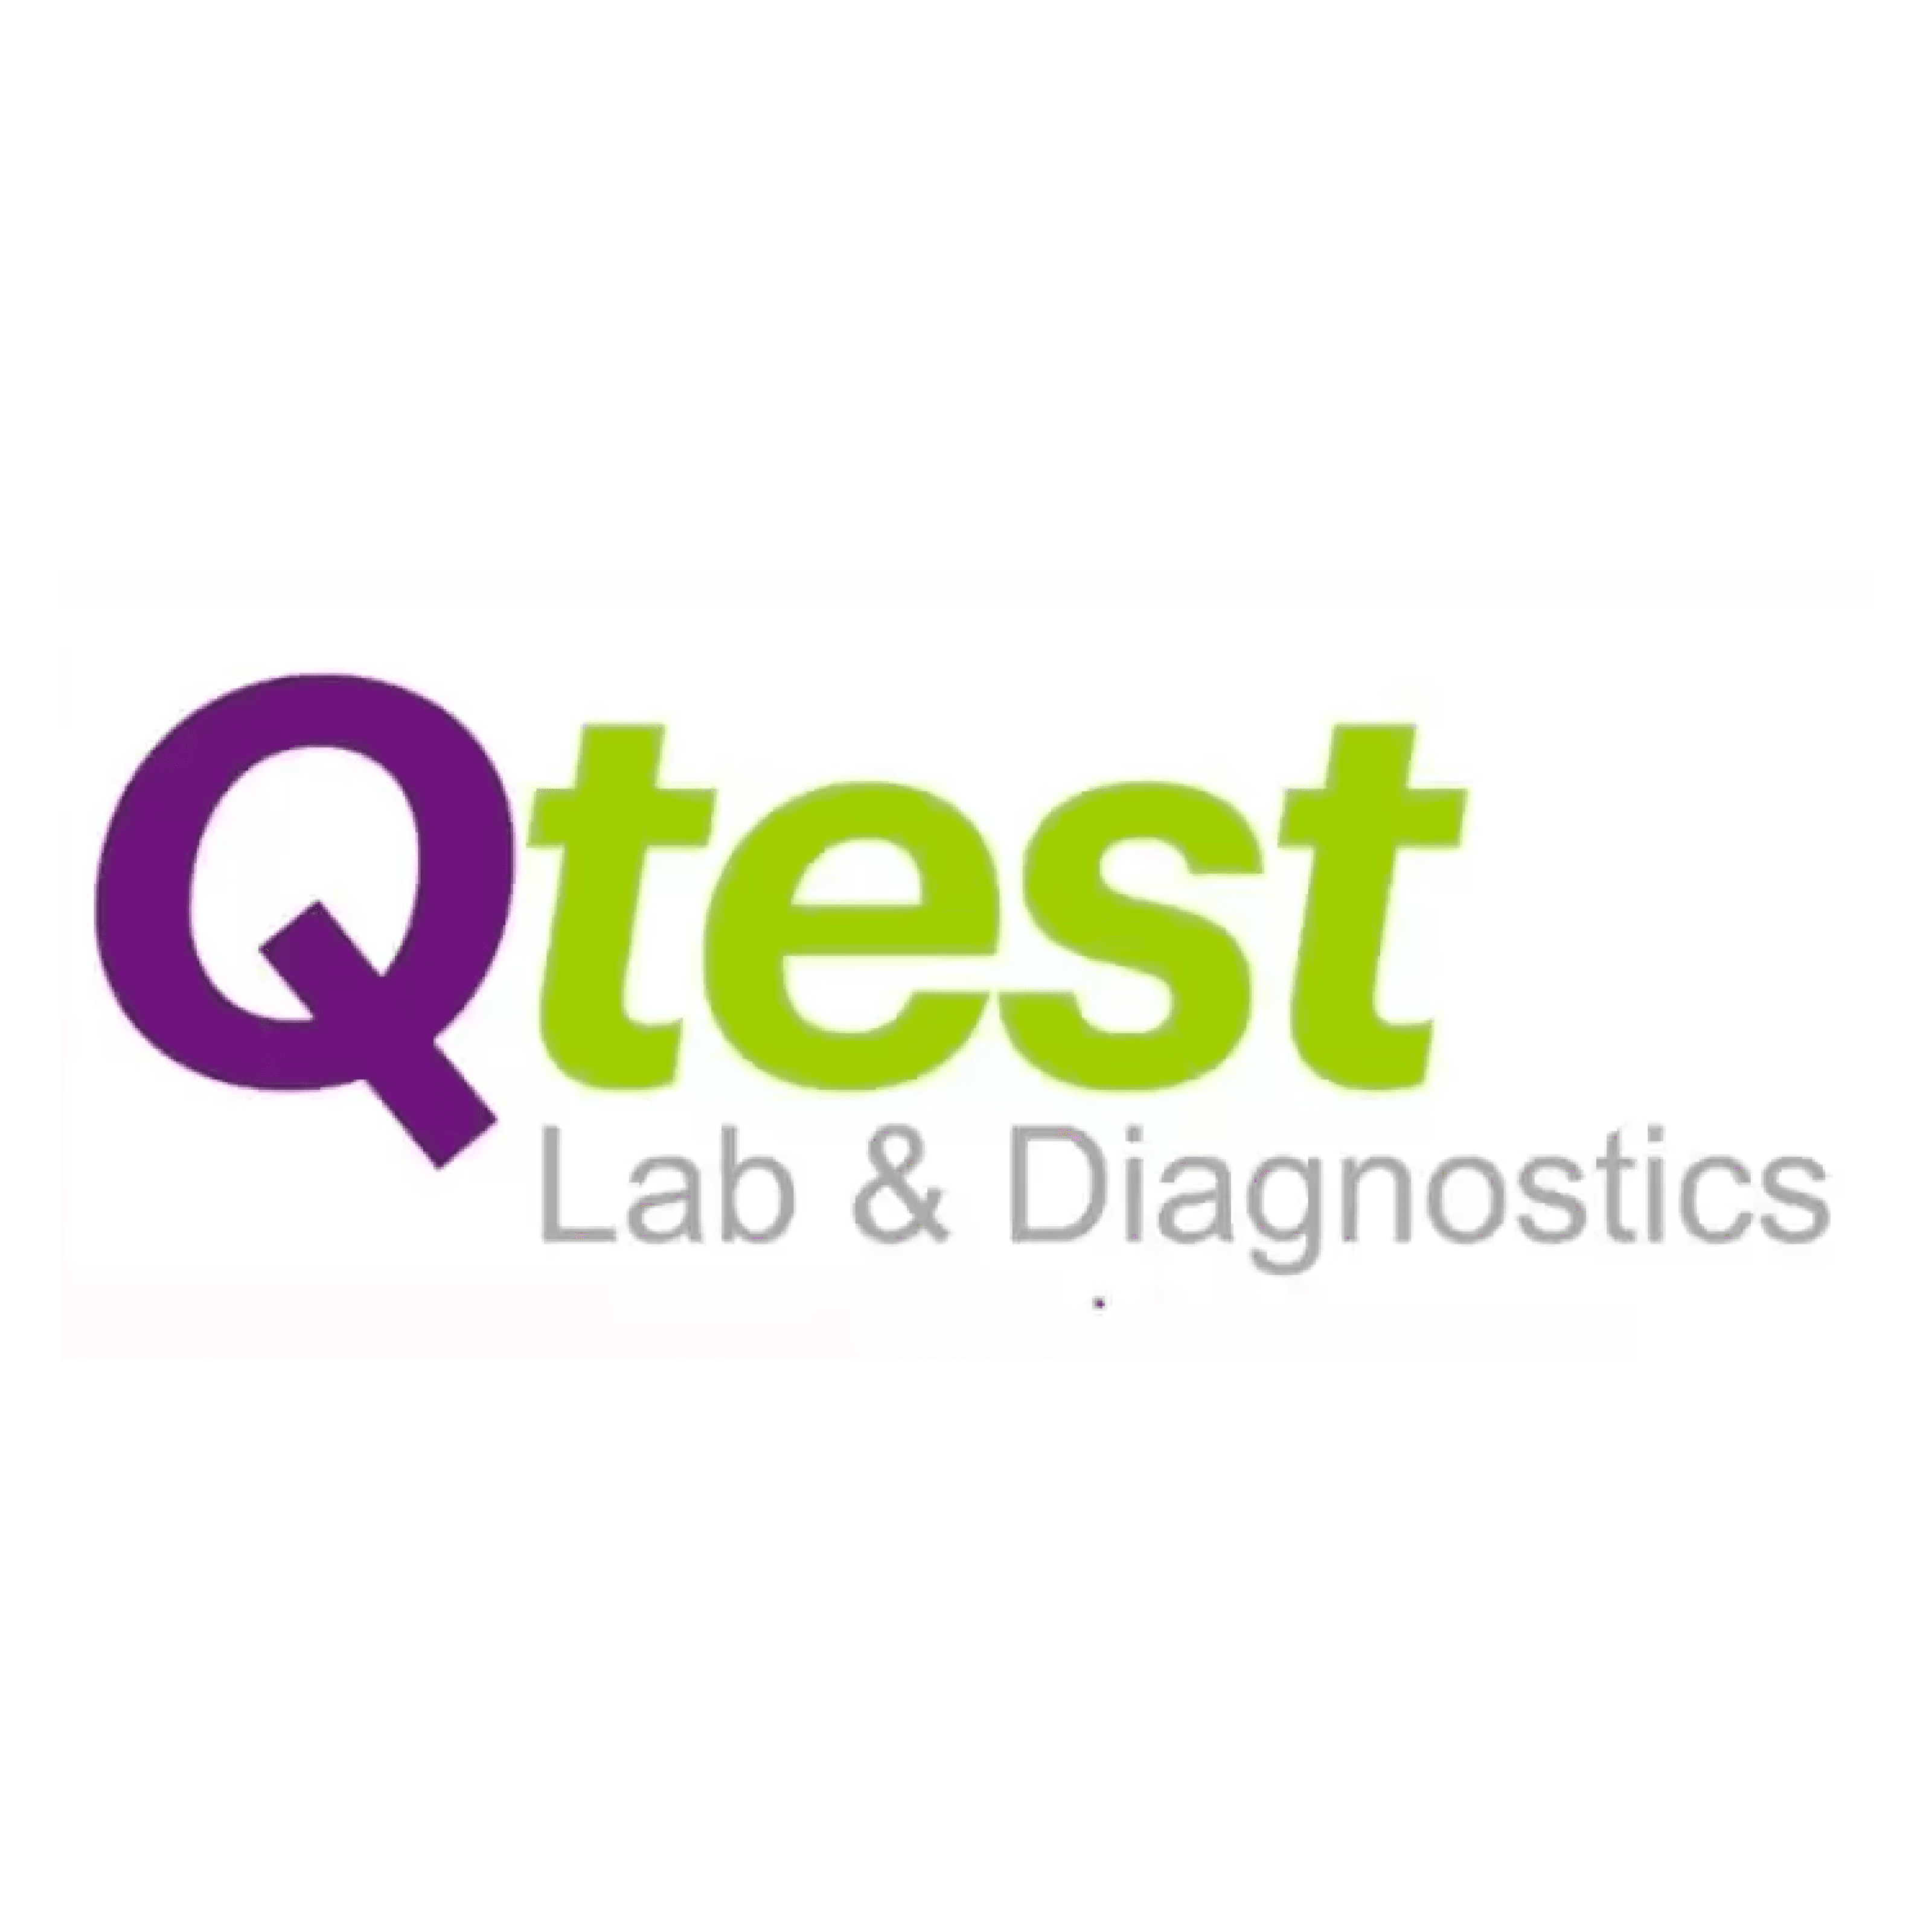 Qtest Lab & Diagnostics